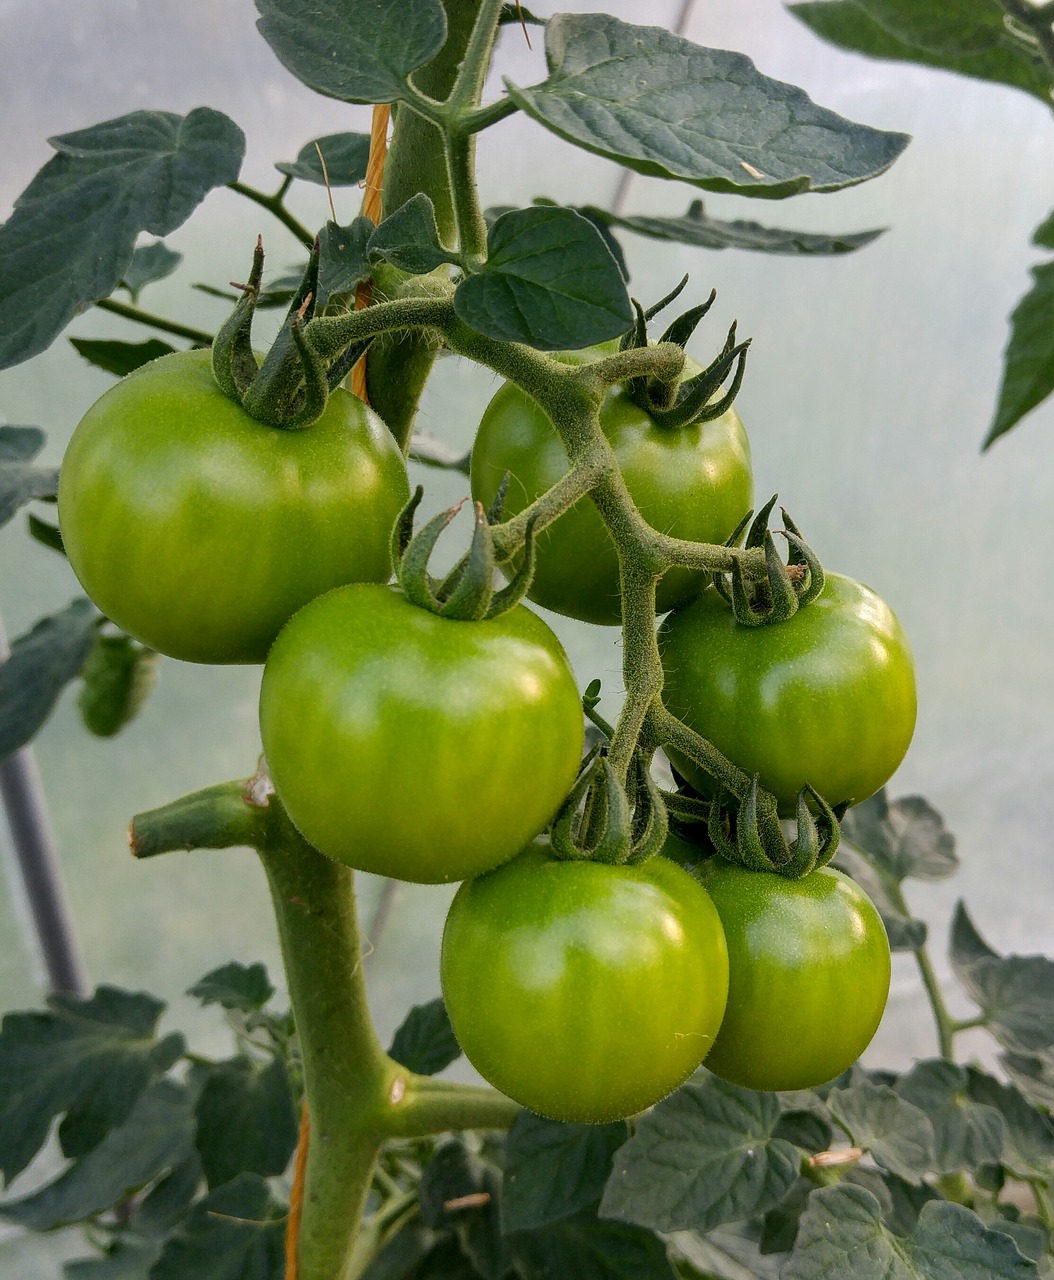 tomato green tomato plant free photo